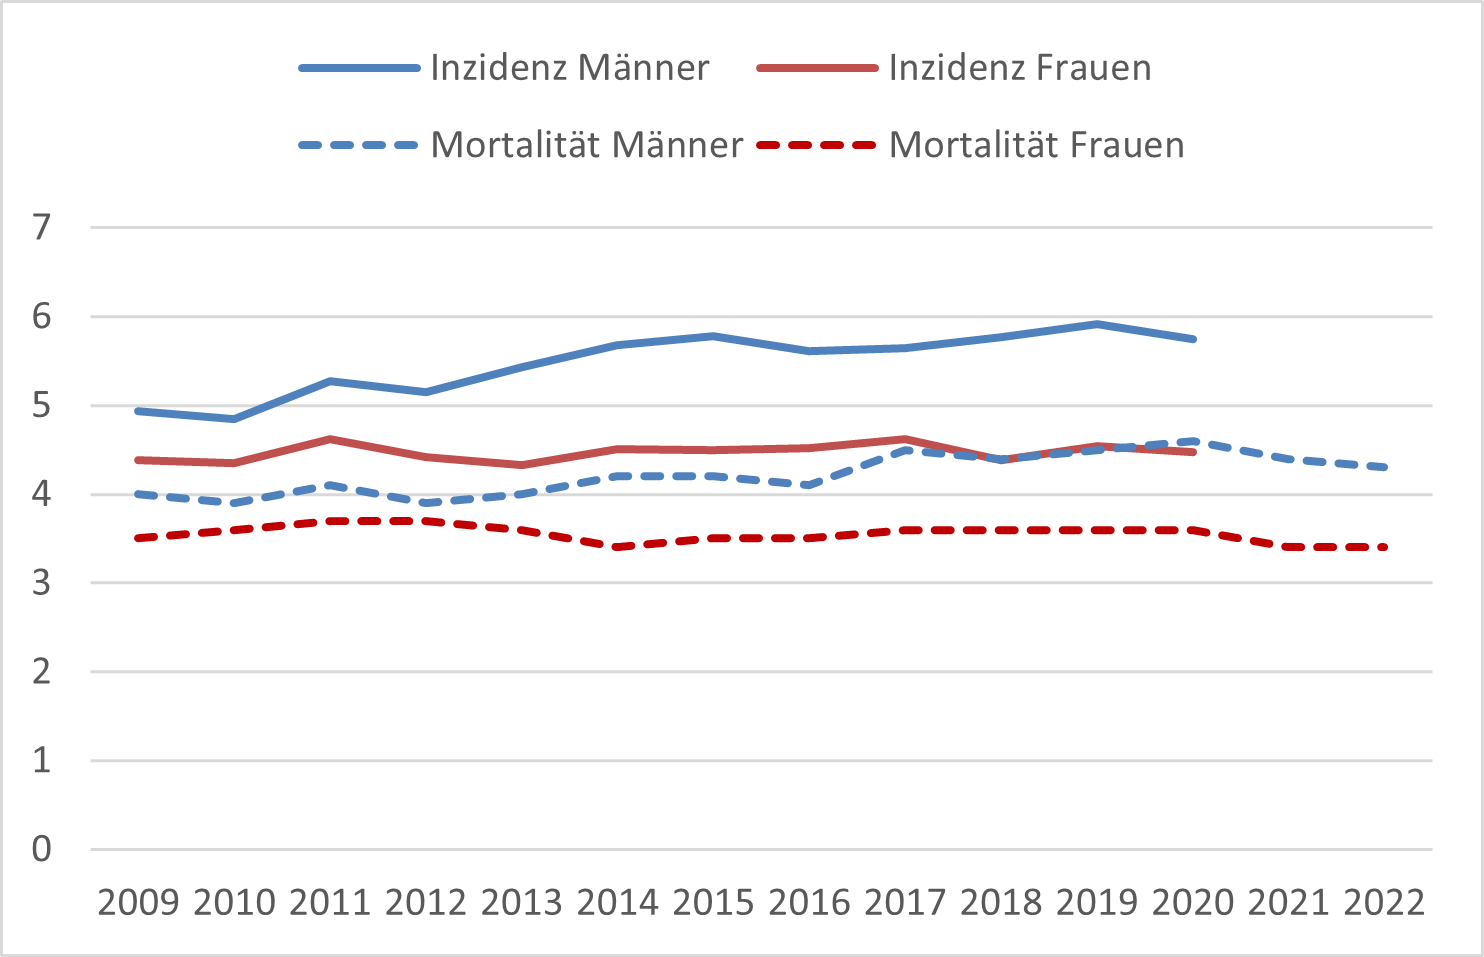 Altersstandardisierte Neuerkrankungs- und Sterberaten für biliäre Malignome in Deutschland, nach Geschlecht (2009-2020/2022, je 100.000 Personen, alter Europastandard)